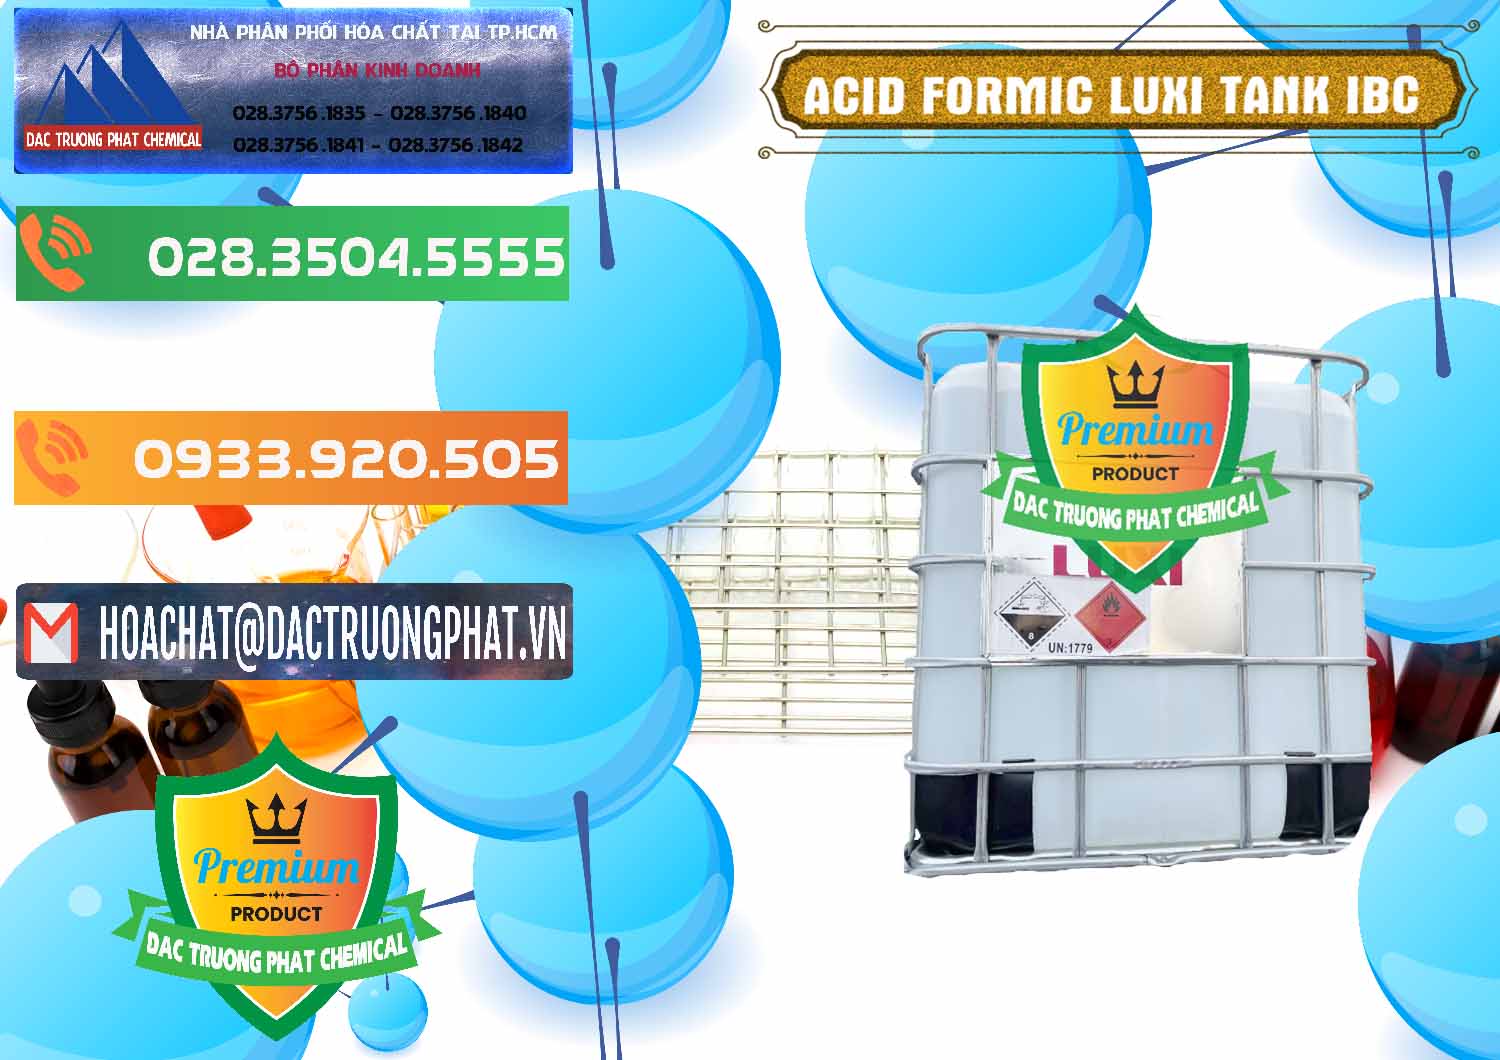 Cty bán và cung ứng Acid Formic - Acid Formic Tank - Bồn IBC Luxi Trung Quốc China - 0400 - Đơn vị bán & phân phối hóa chất tại TP.HCM - hoachatxulynuoc.com.vn